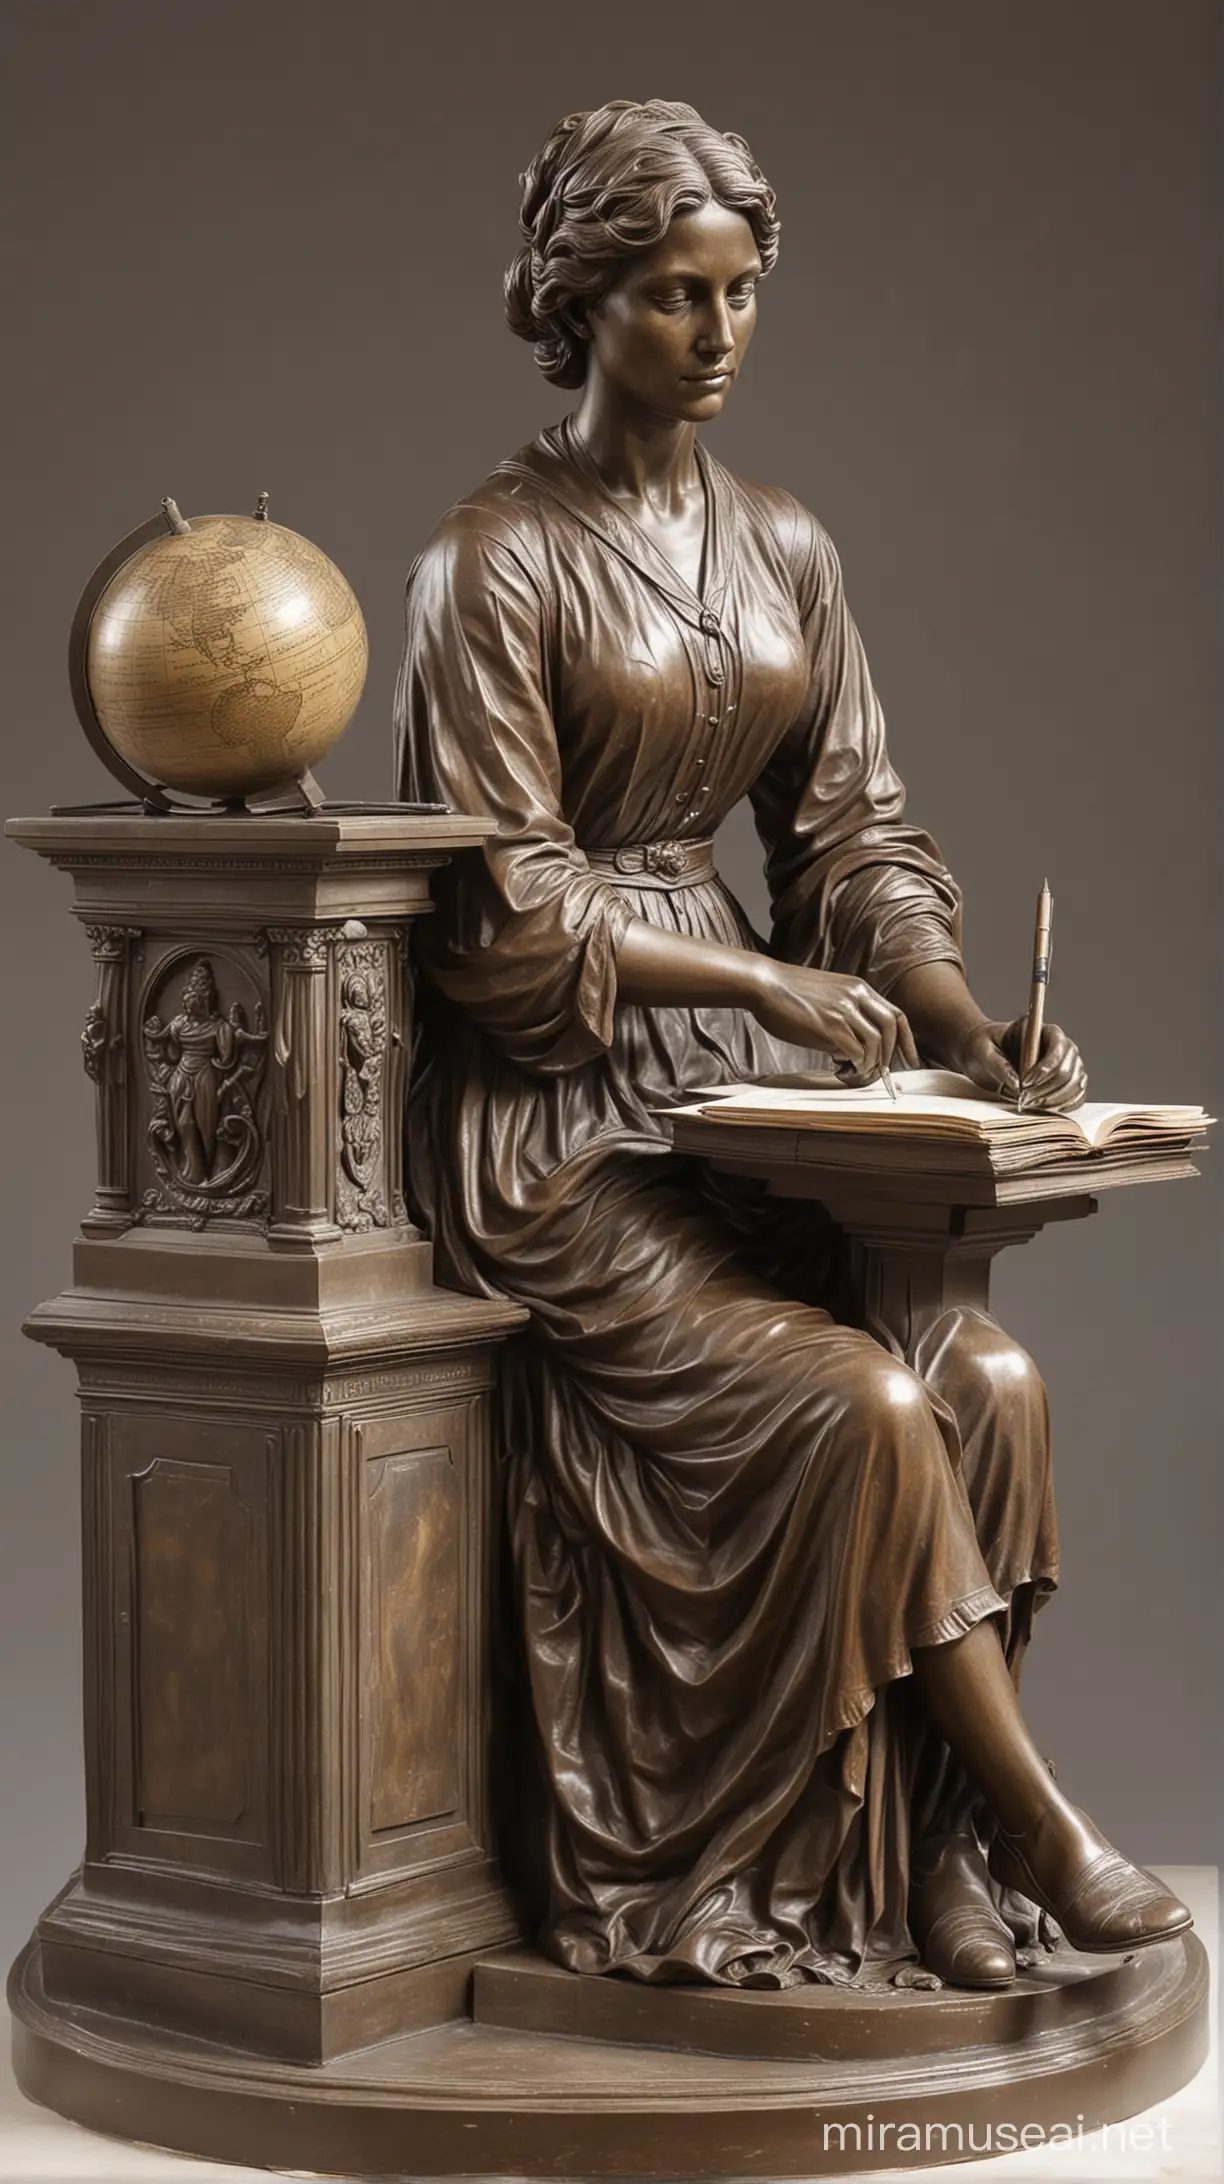 нарисуй бронзовый памятник первой учительнице женщине,  она сидит за столом, перед ней стоит глобус  и лежит несколько книг, в руке у неё авторучка, памятник изображен на пьедестале в трёх ракурсах- анфас, профиль, вид сзади